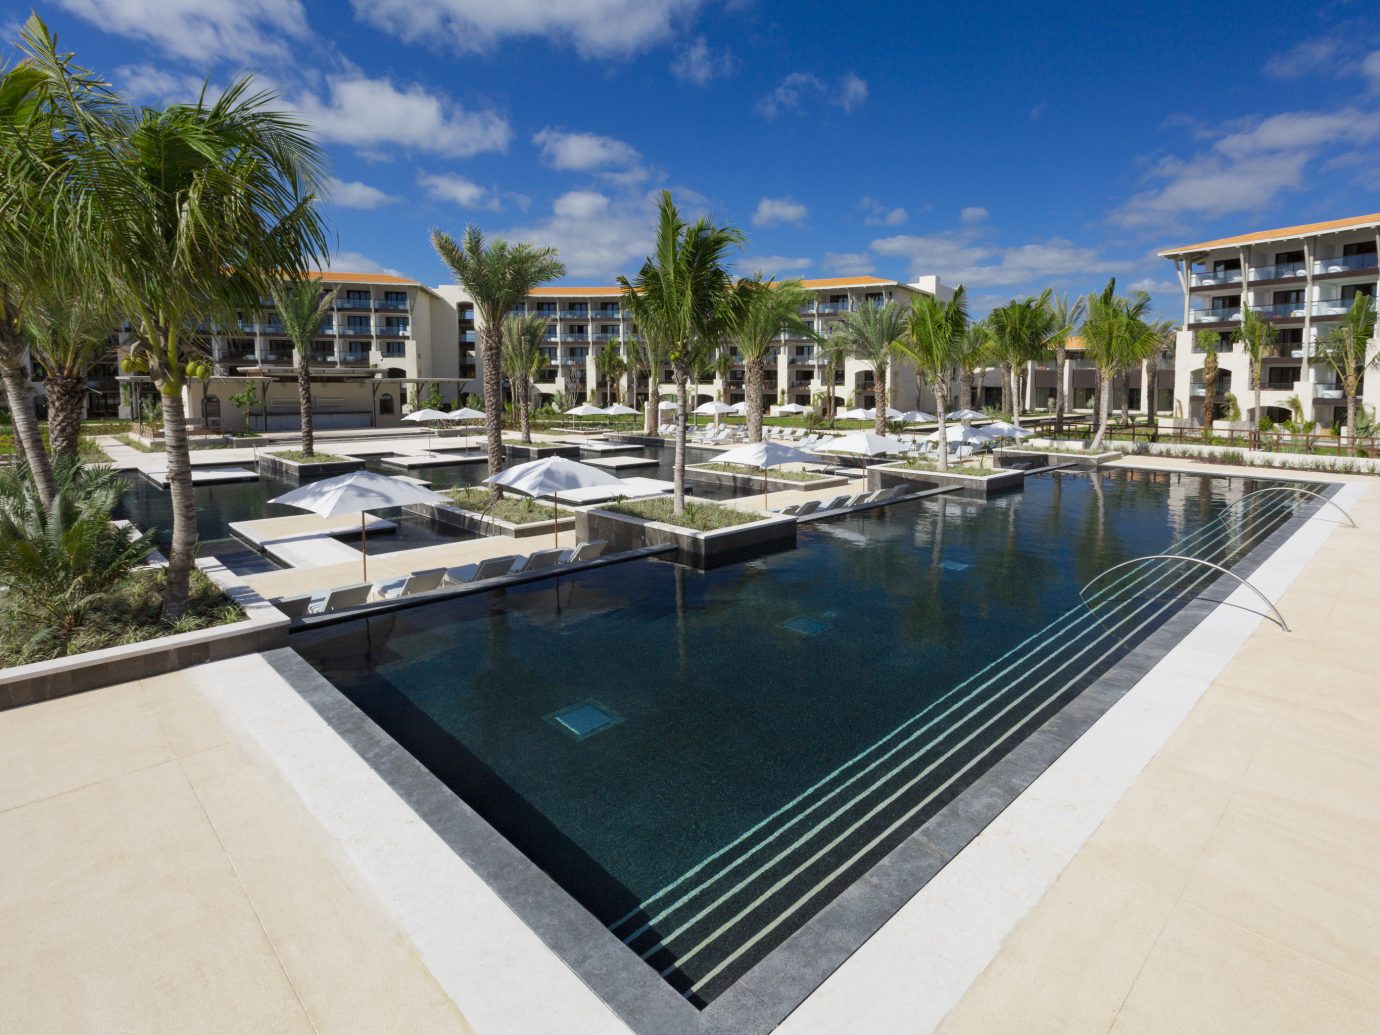 Pool at UNICO 20˚ 87˚ Riviera Maya, Mexico